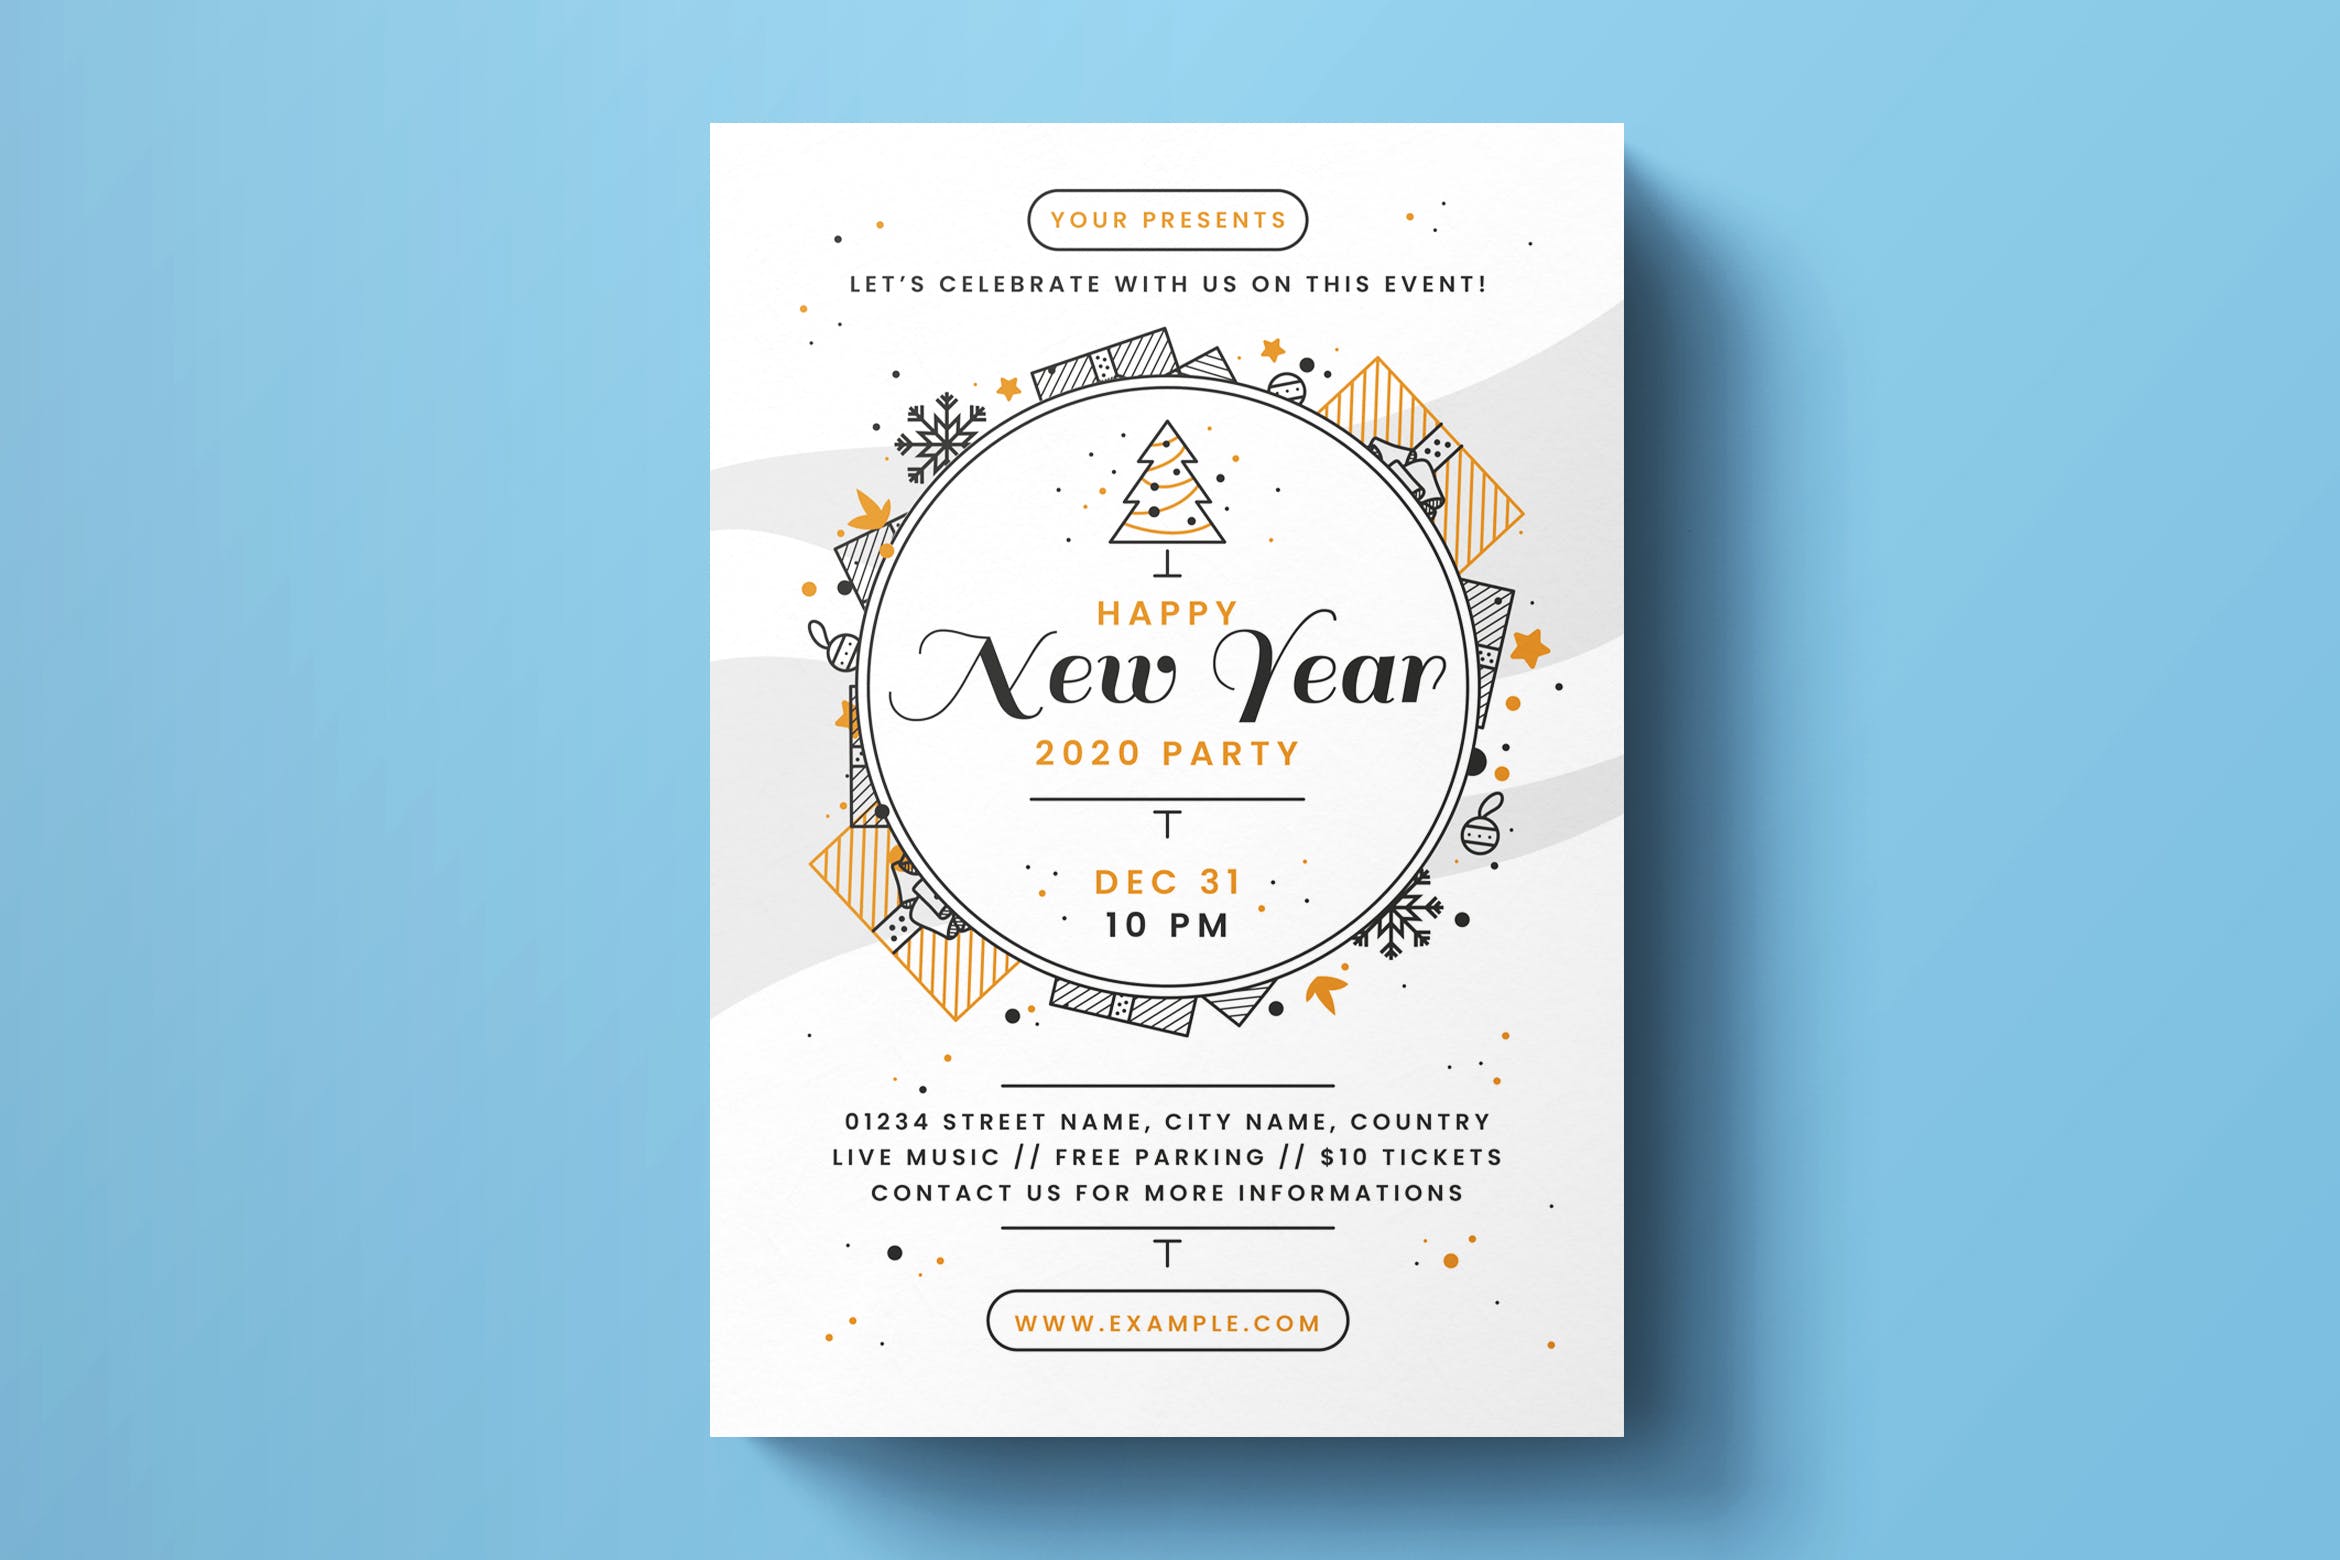 简约线条设计风格2020新年倒计时活动海报设计模板 New Year Flyer Template插图